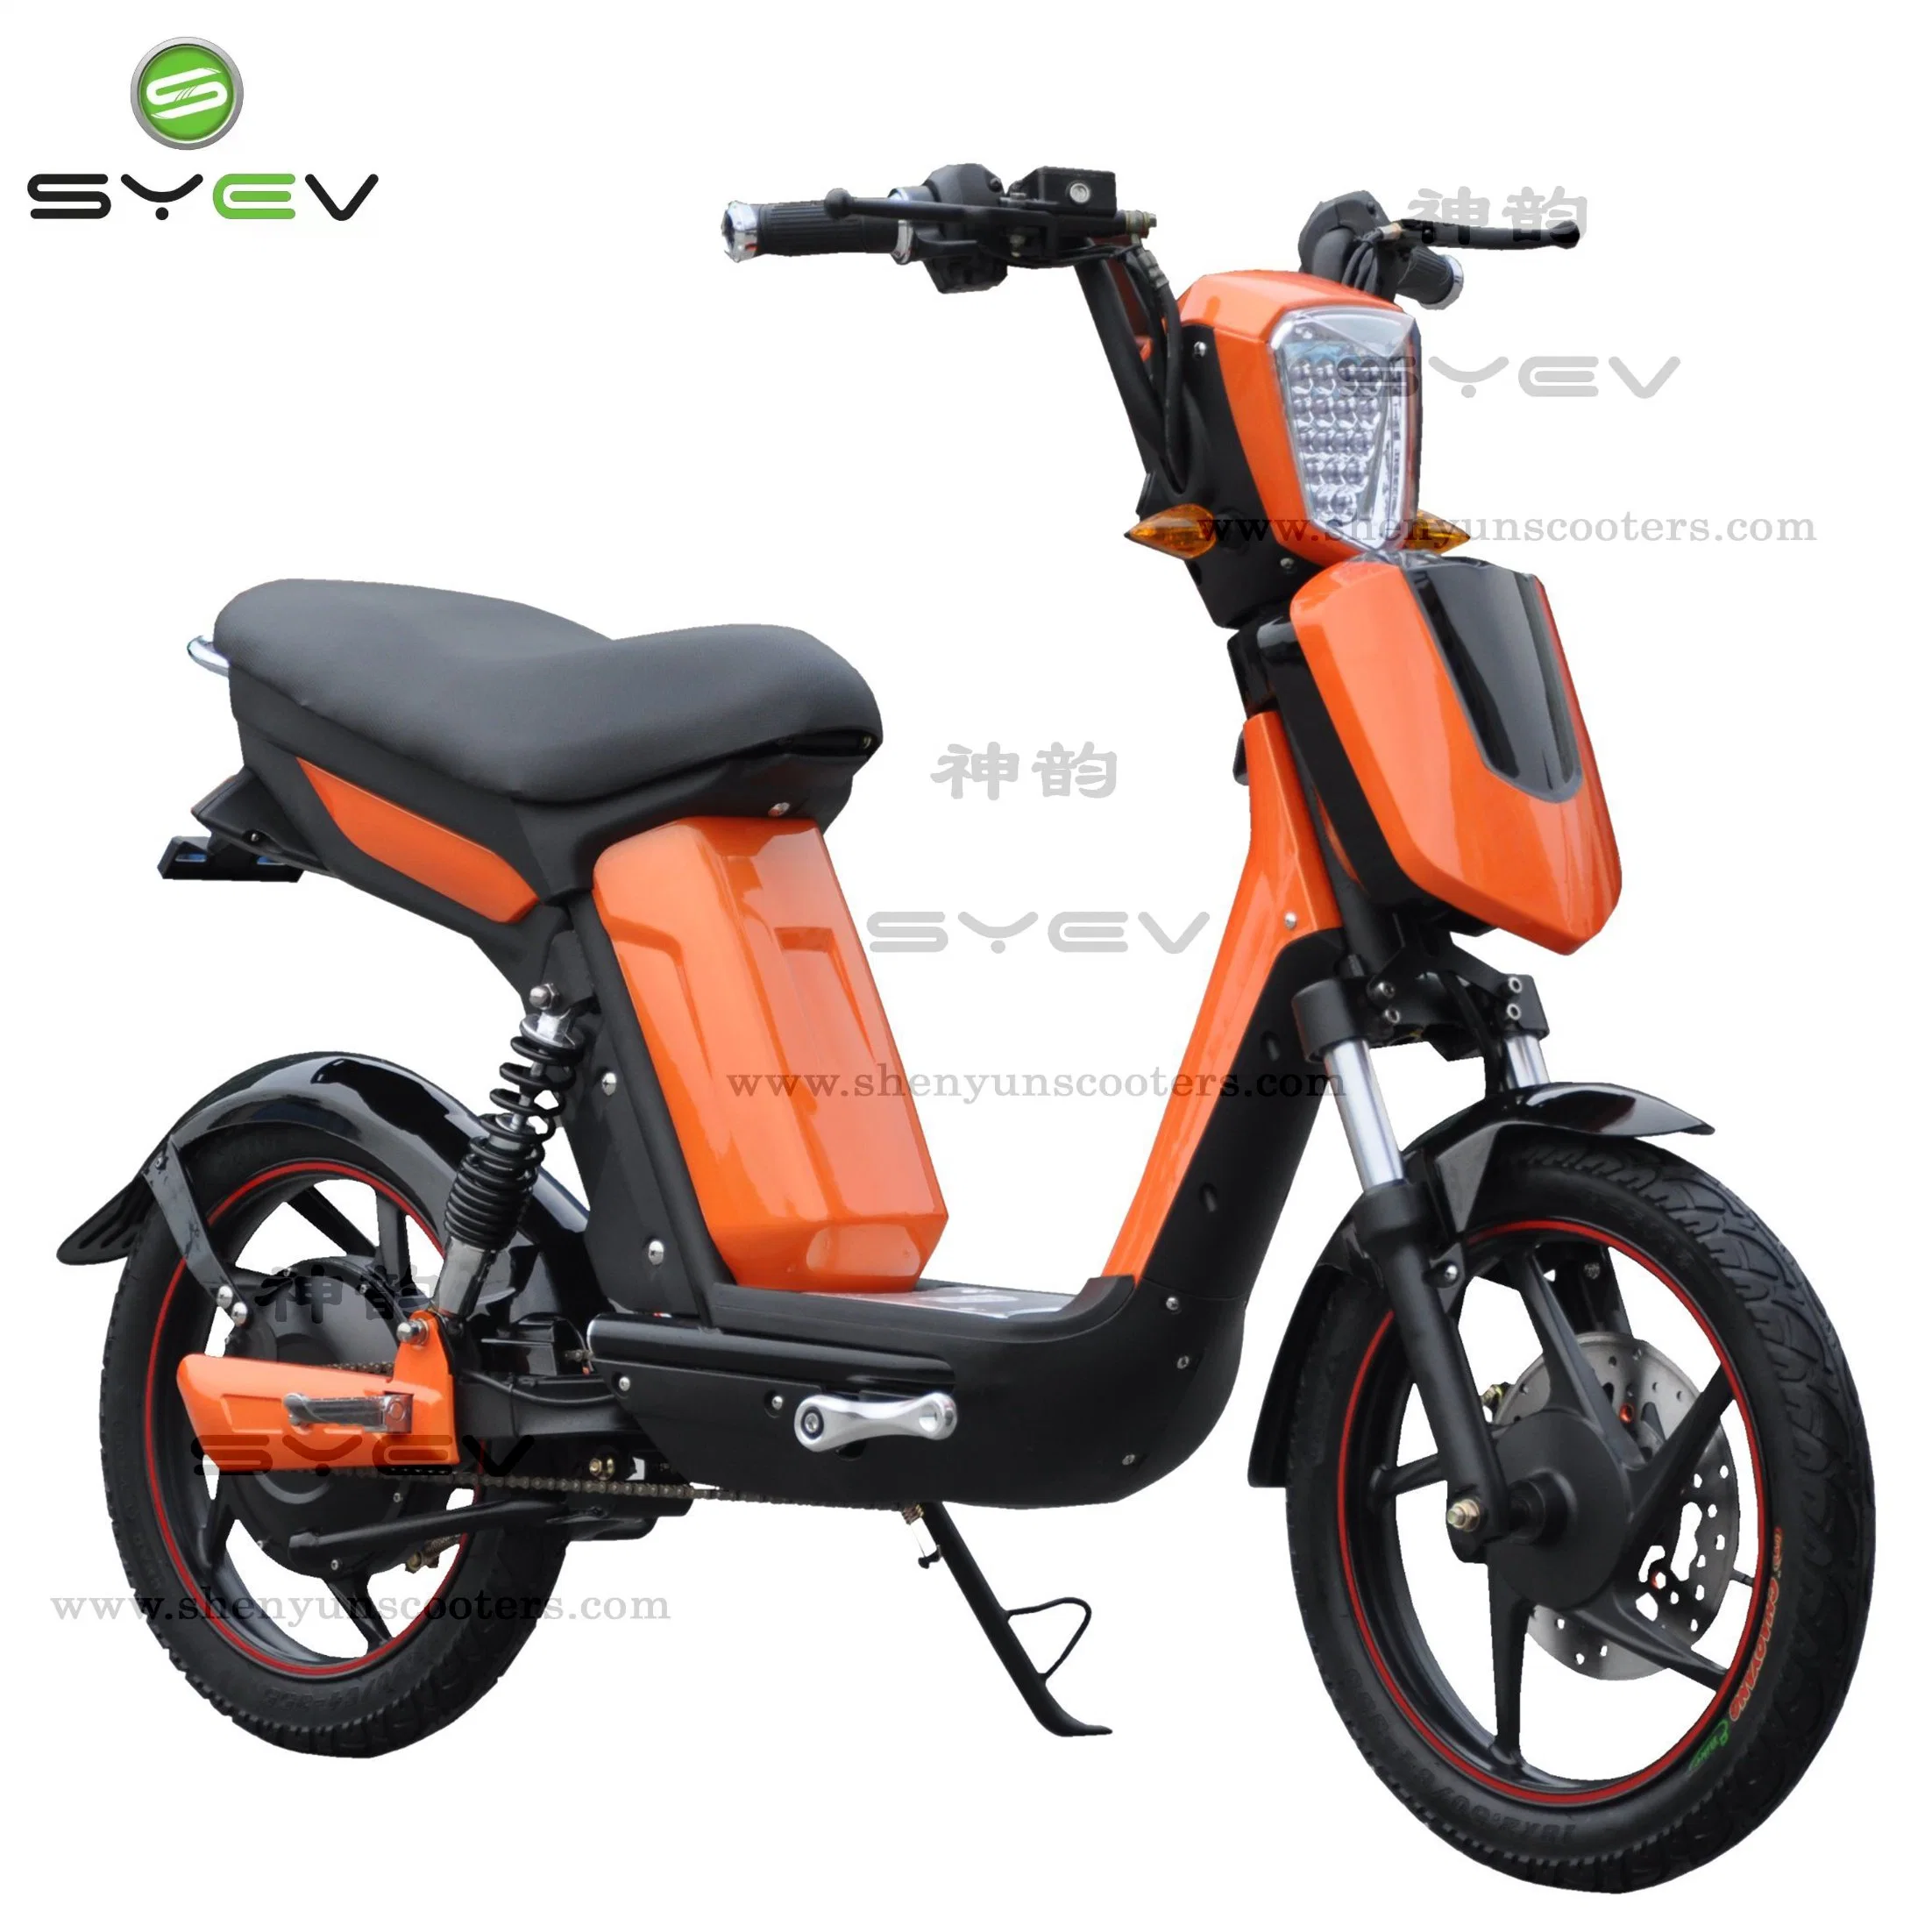 Syev preço barato qualidade de qualidade 500W / 800W BLDC motor chinês Electric Moto de scooter com travões de disco/tambor